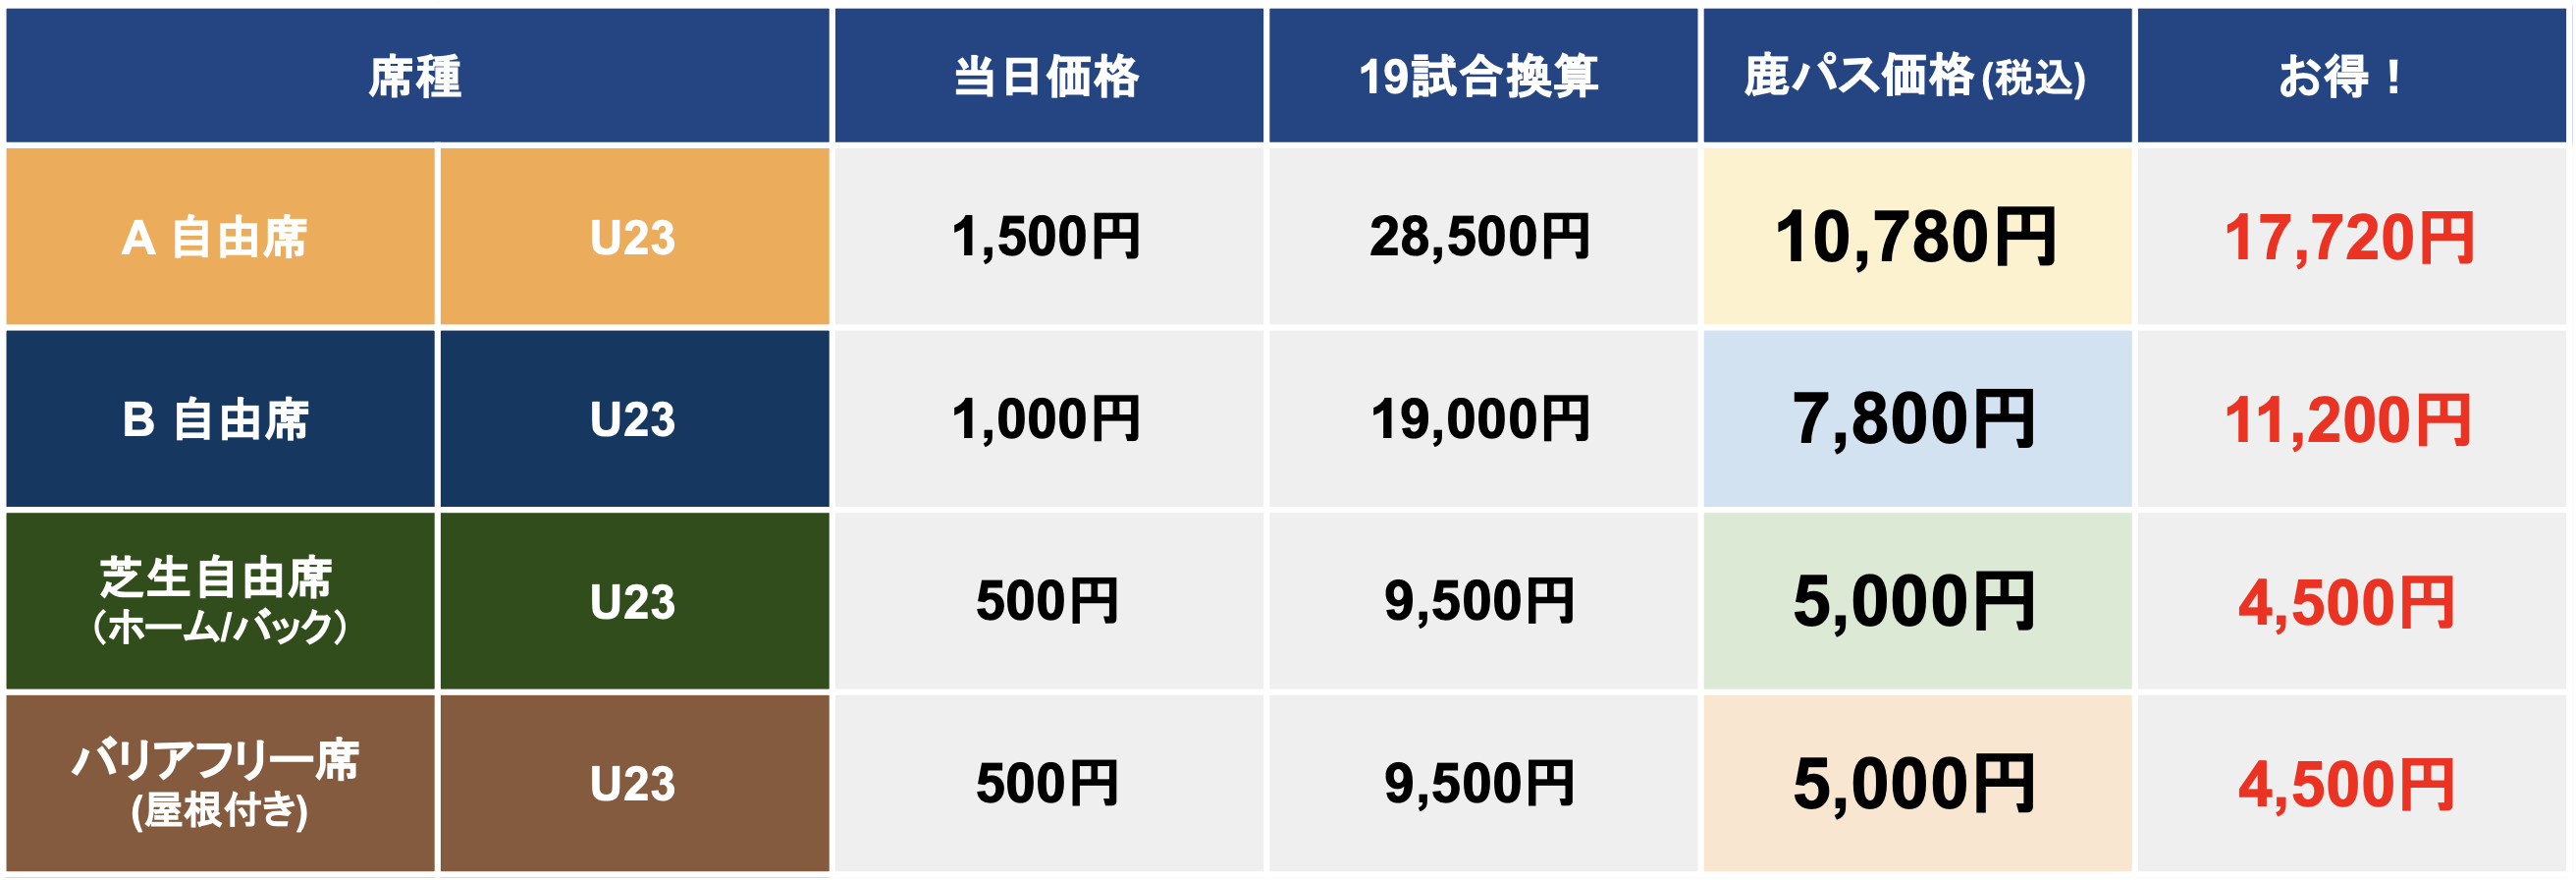 奈良クラブシーズンチケット「鹿パス」U23向け（23歳以下限定）価格